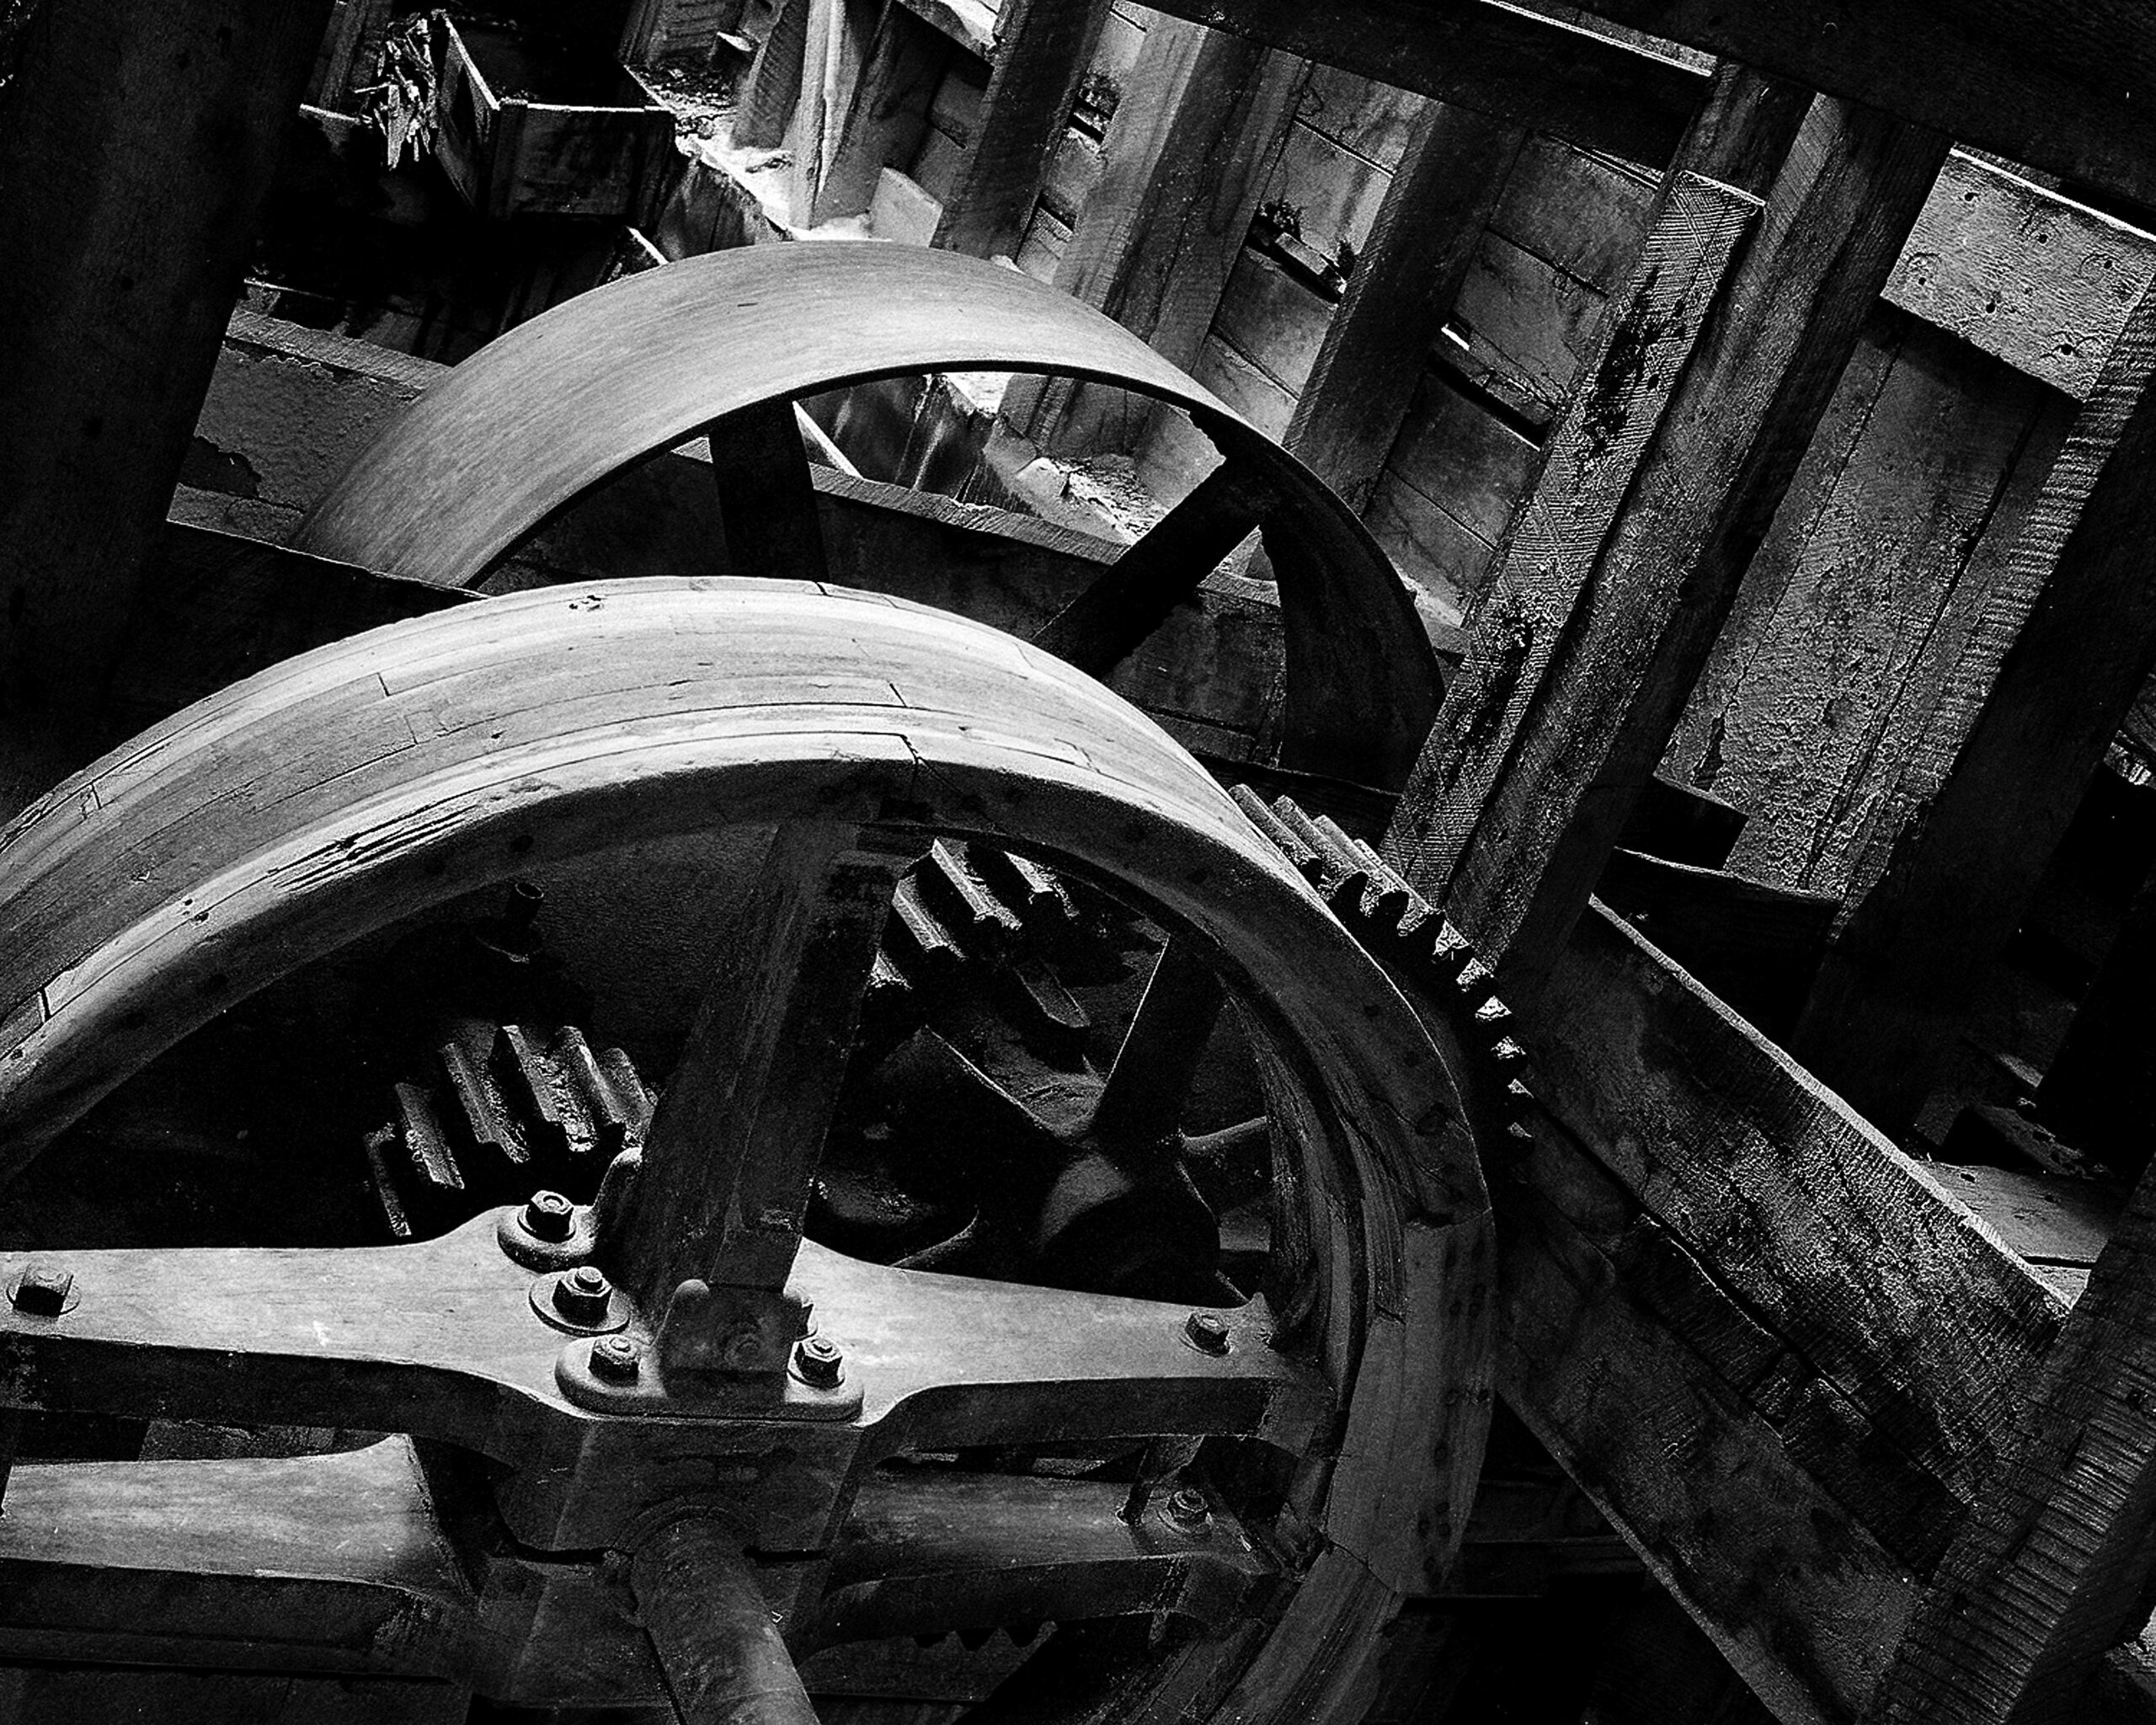 Machinery at Bonanza Mine in Colorado